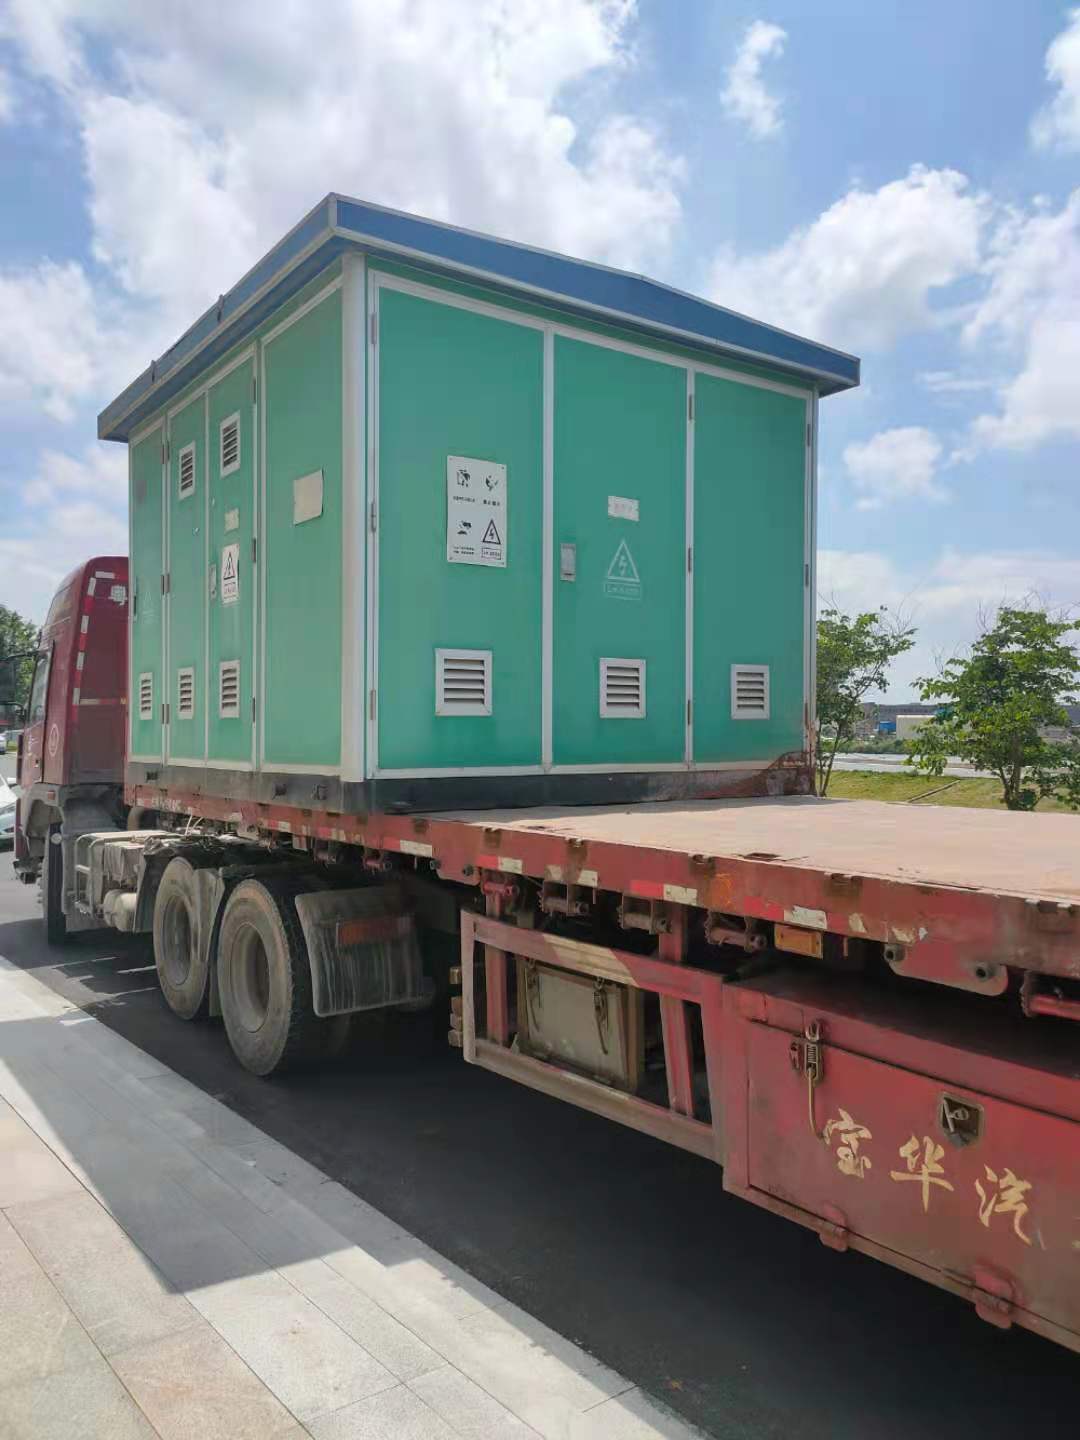 铜芯变压器回收-广东珠海市提供变压器回收联系电话